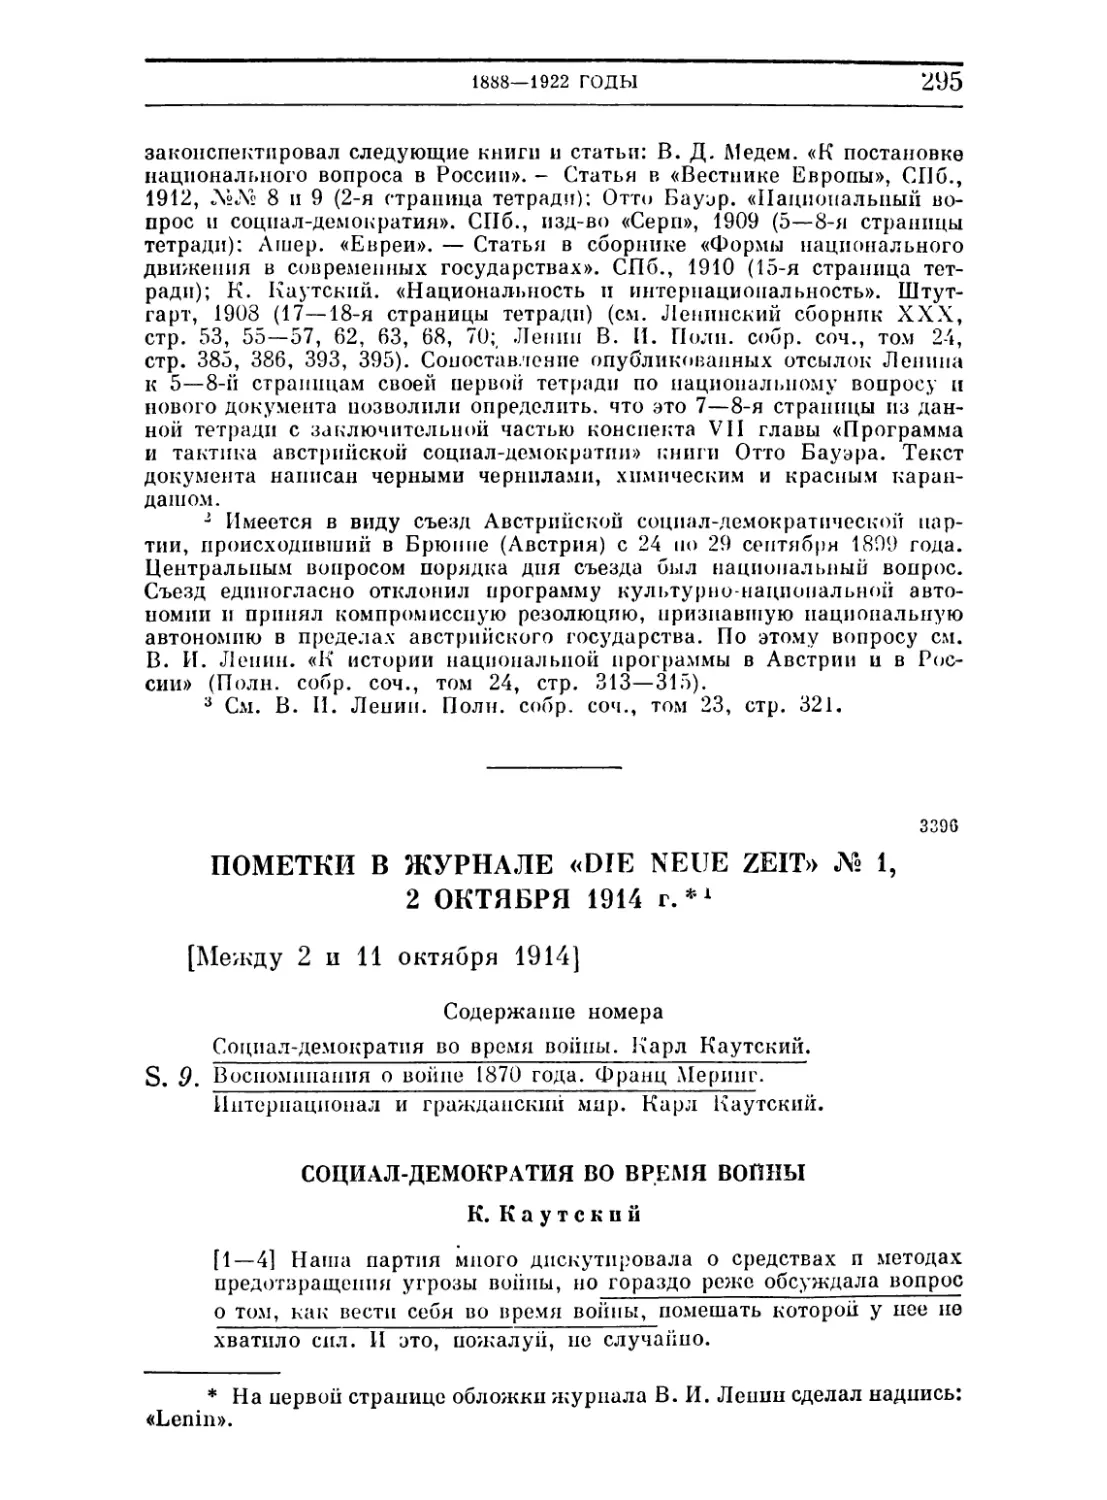 Пометки в журнале «Die Neue Zeit» № 1, 2 октября 1914 г. Между 2 и И октября 1914